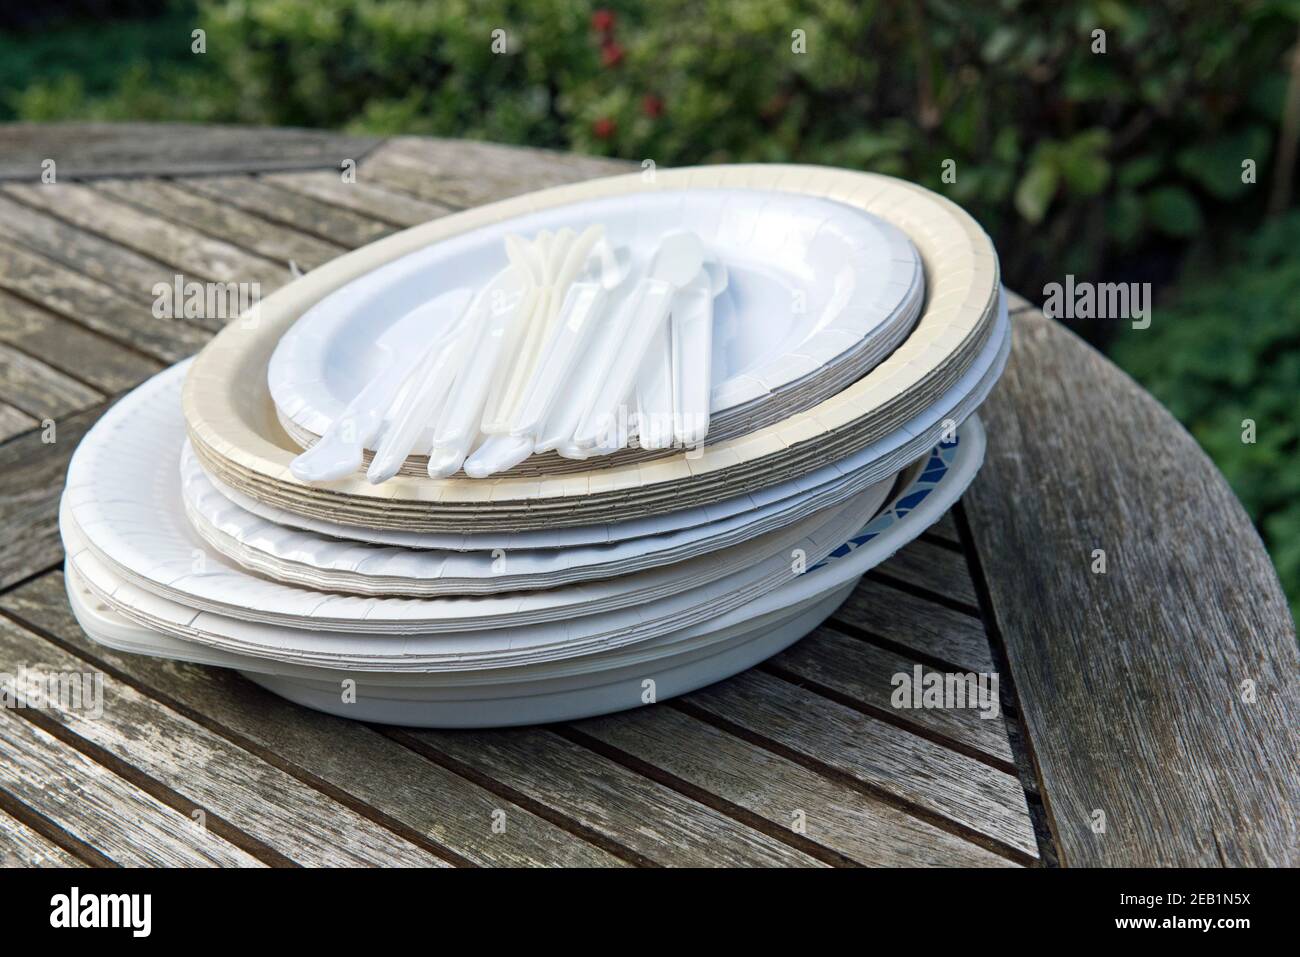 Piatti di carta assortiti con posate in plastica monouso sul tavolo da giardino Foto Stock